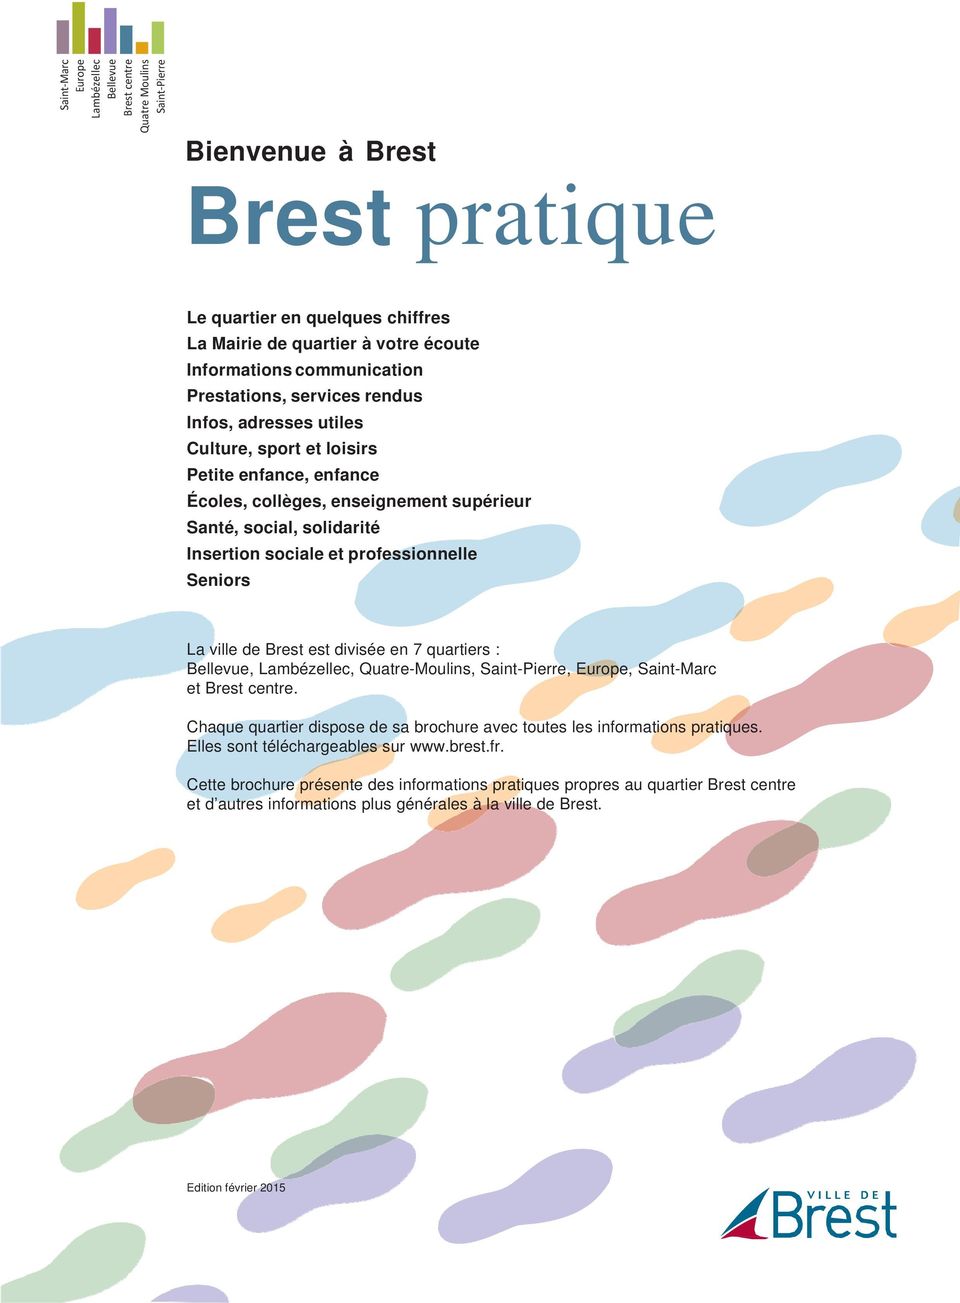 Chaque quartier dispose de sa brochure avec toutes les informations pratiques. Elles sont téléchargeables sur www.brest.fr.